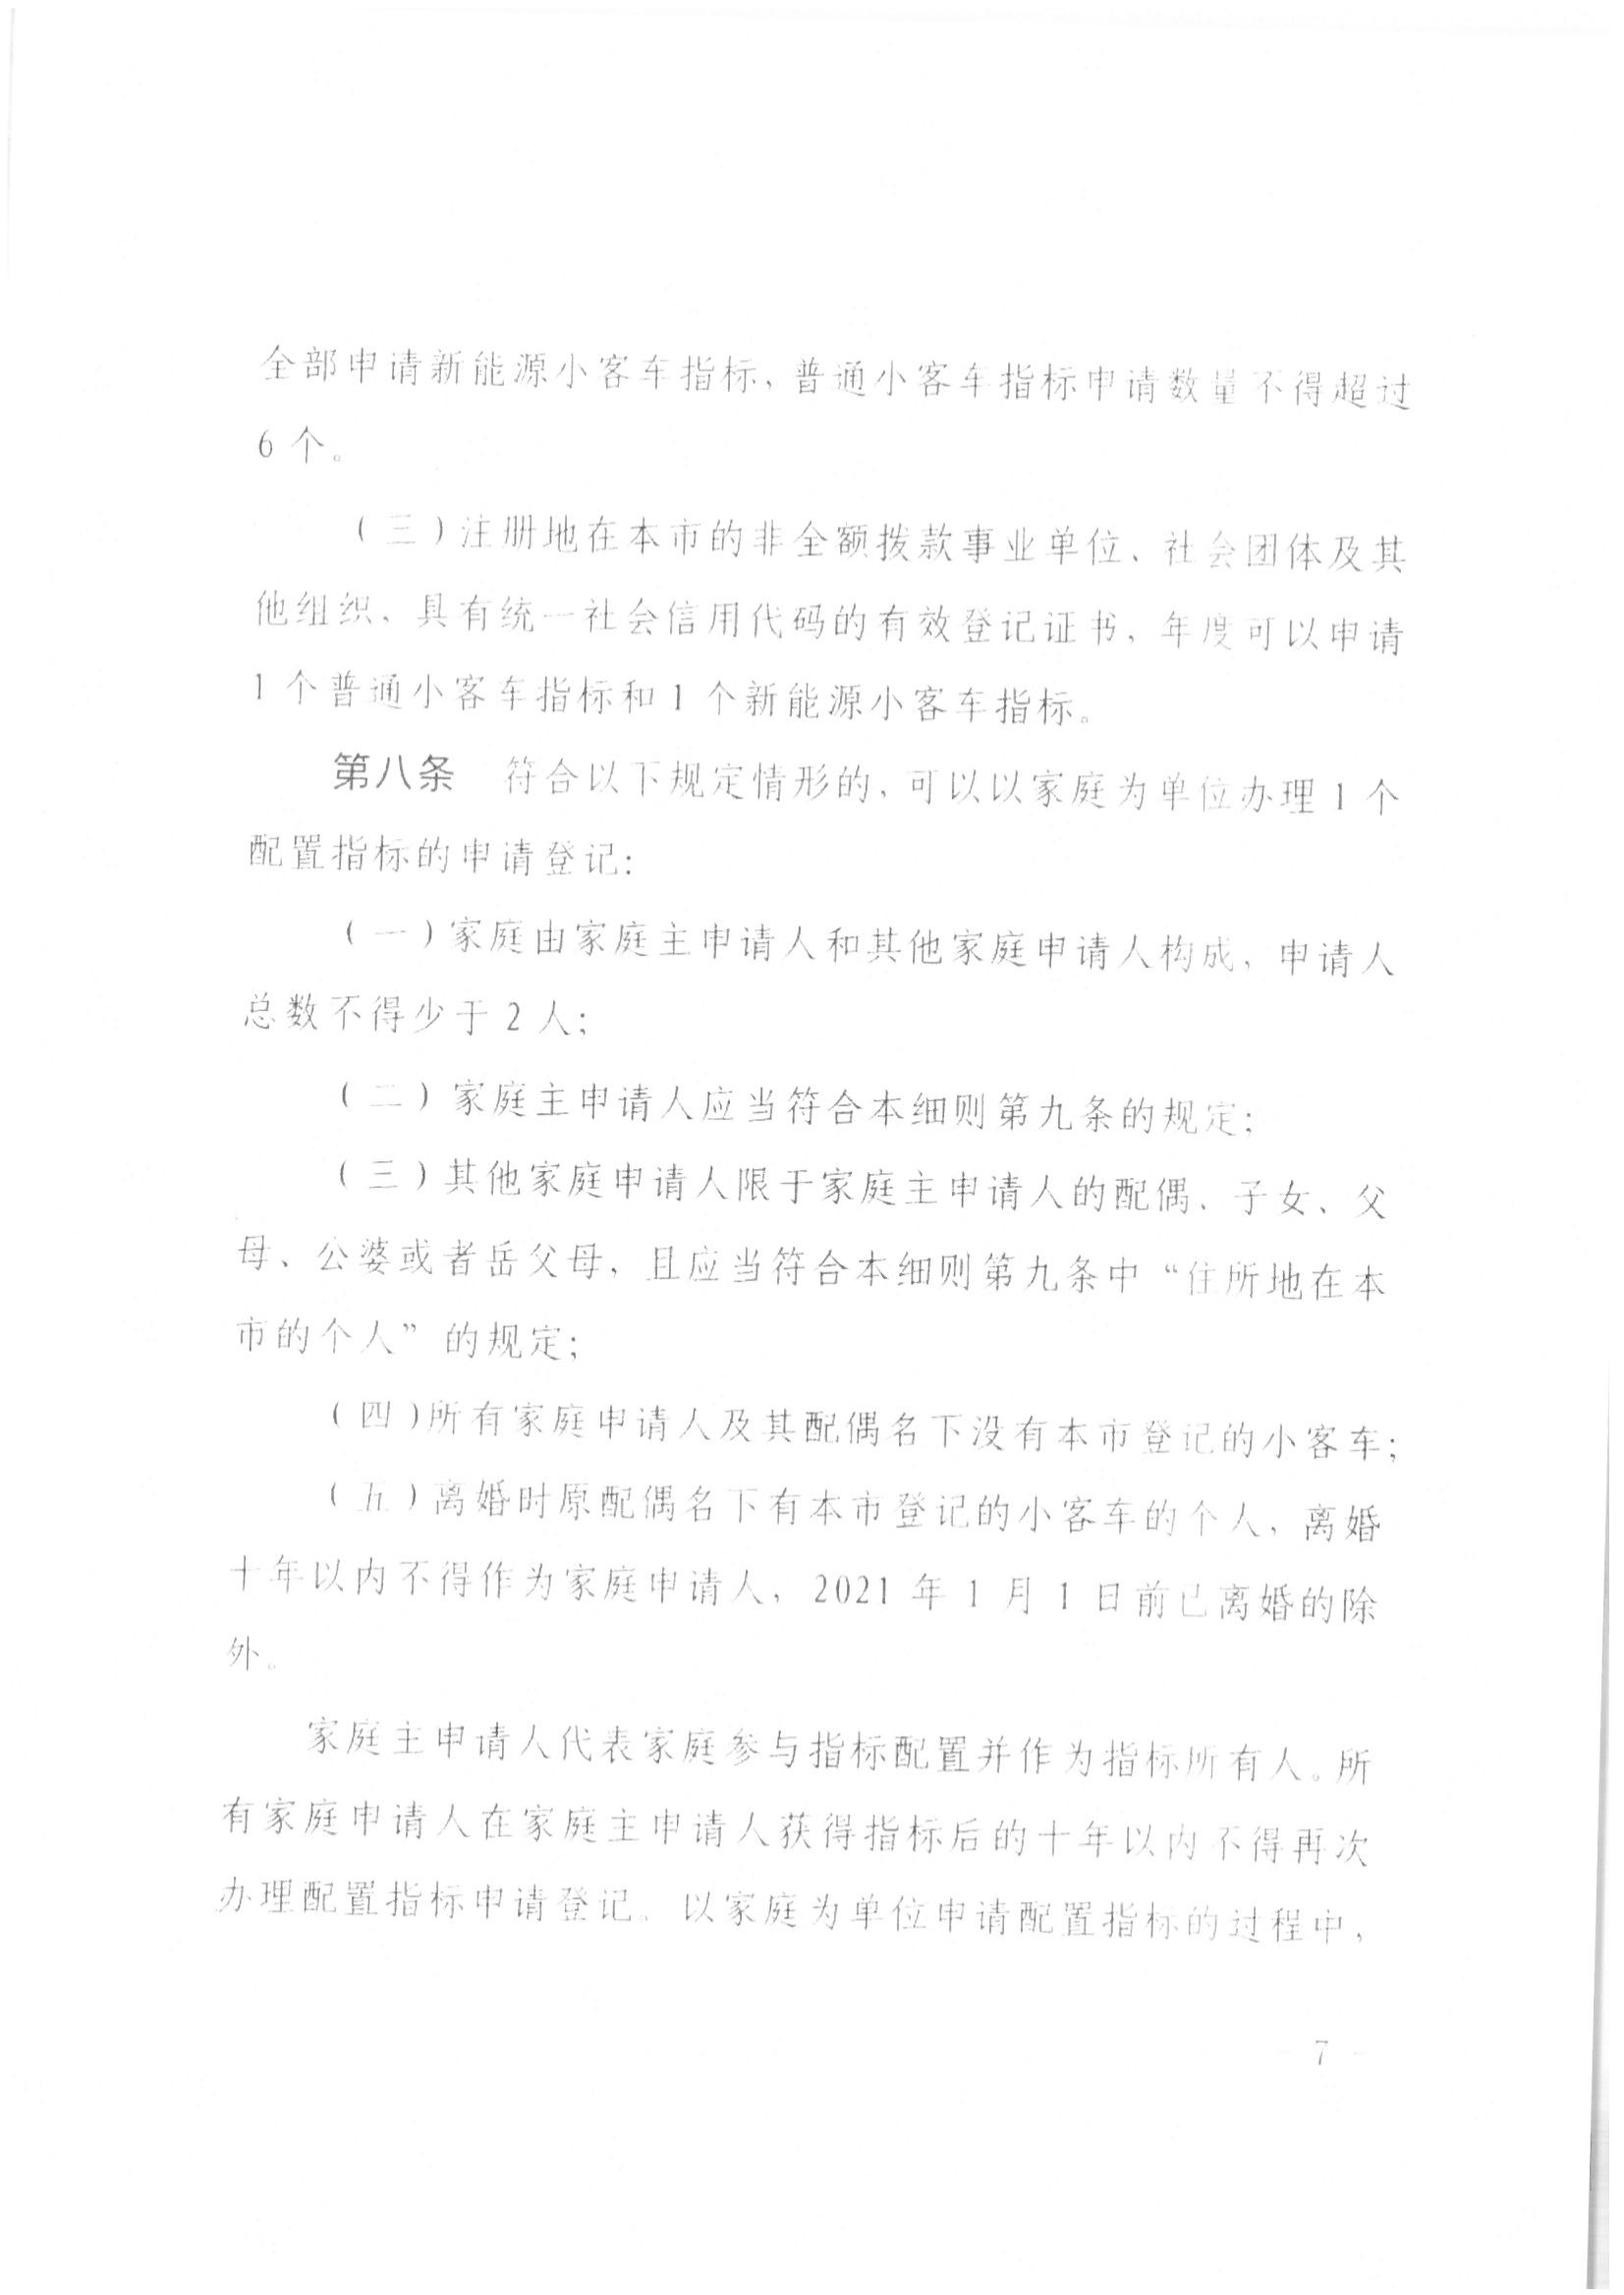 京公协字【2021】21号 北京市公证协会规范执业指引【第13号】_30